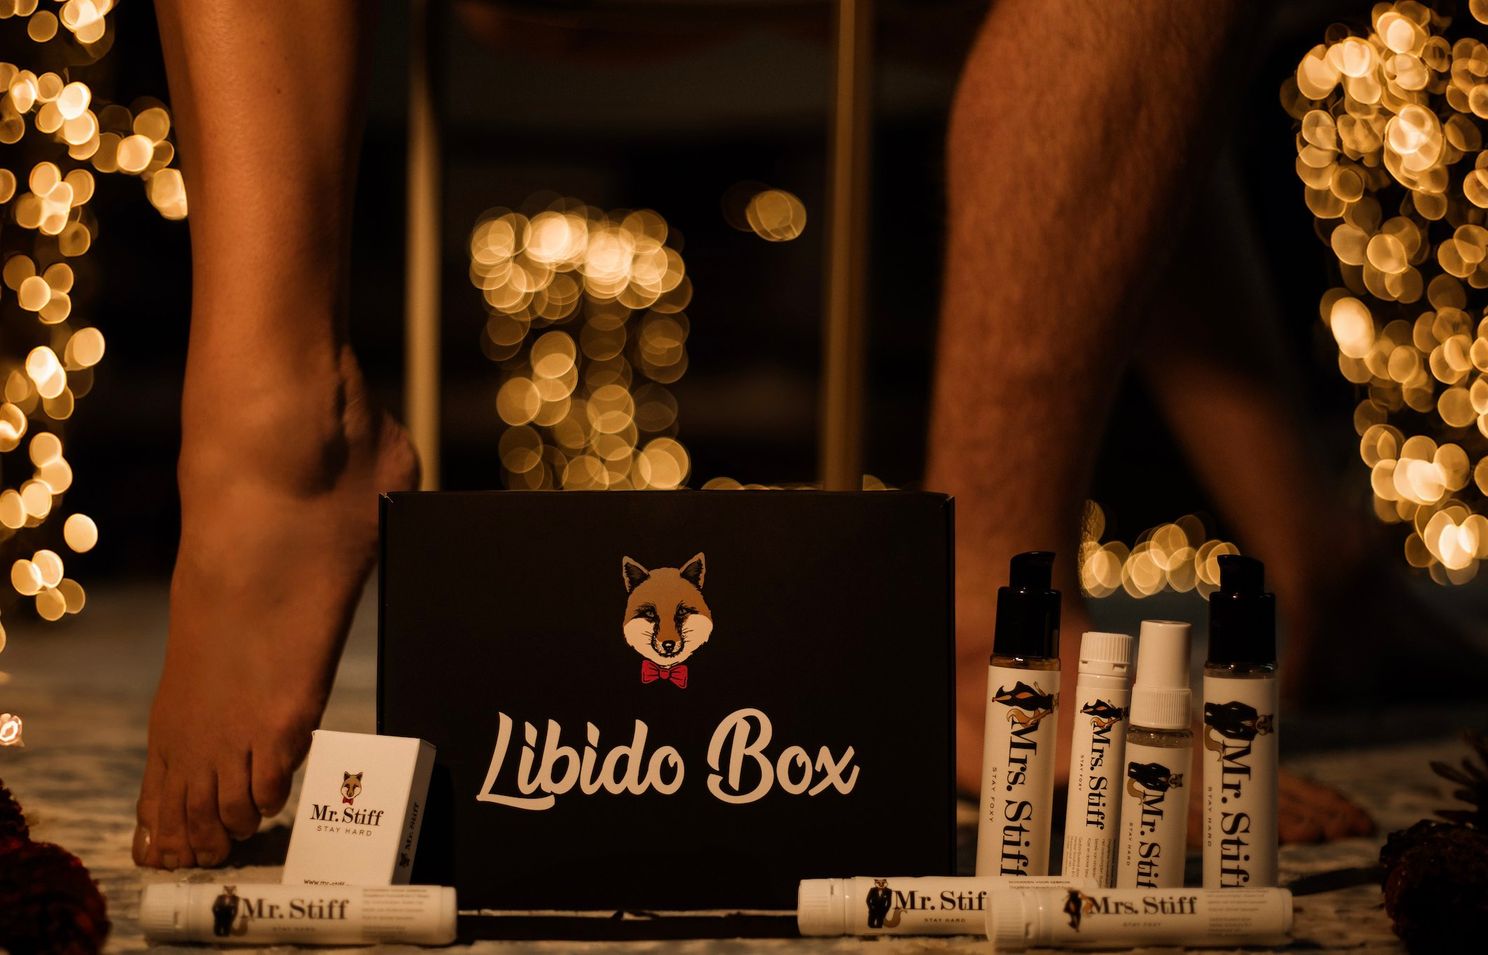 De 'Libido Box' is het ultieme pikante cadeau: "Vier orgas.mes op amper 12 uur"